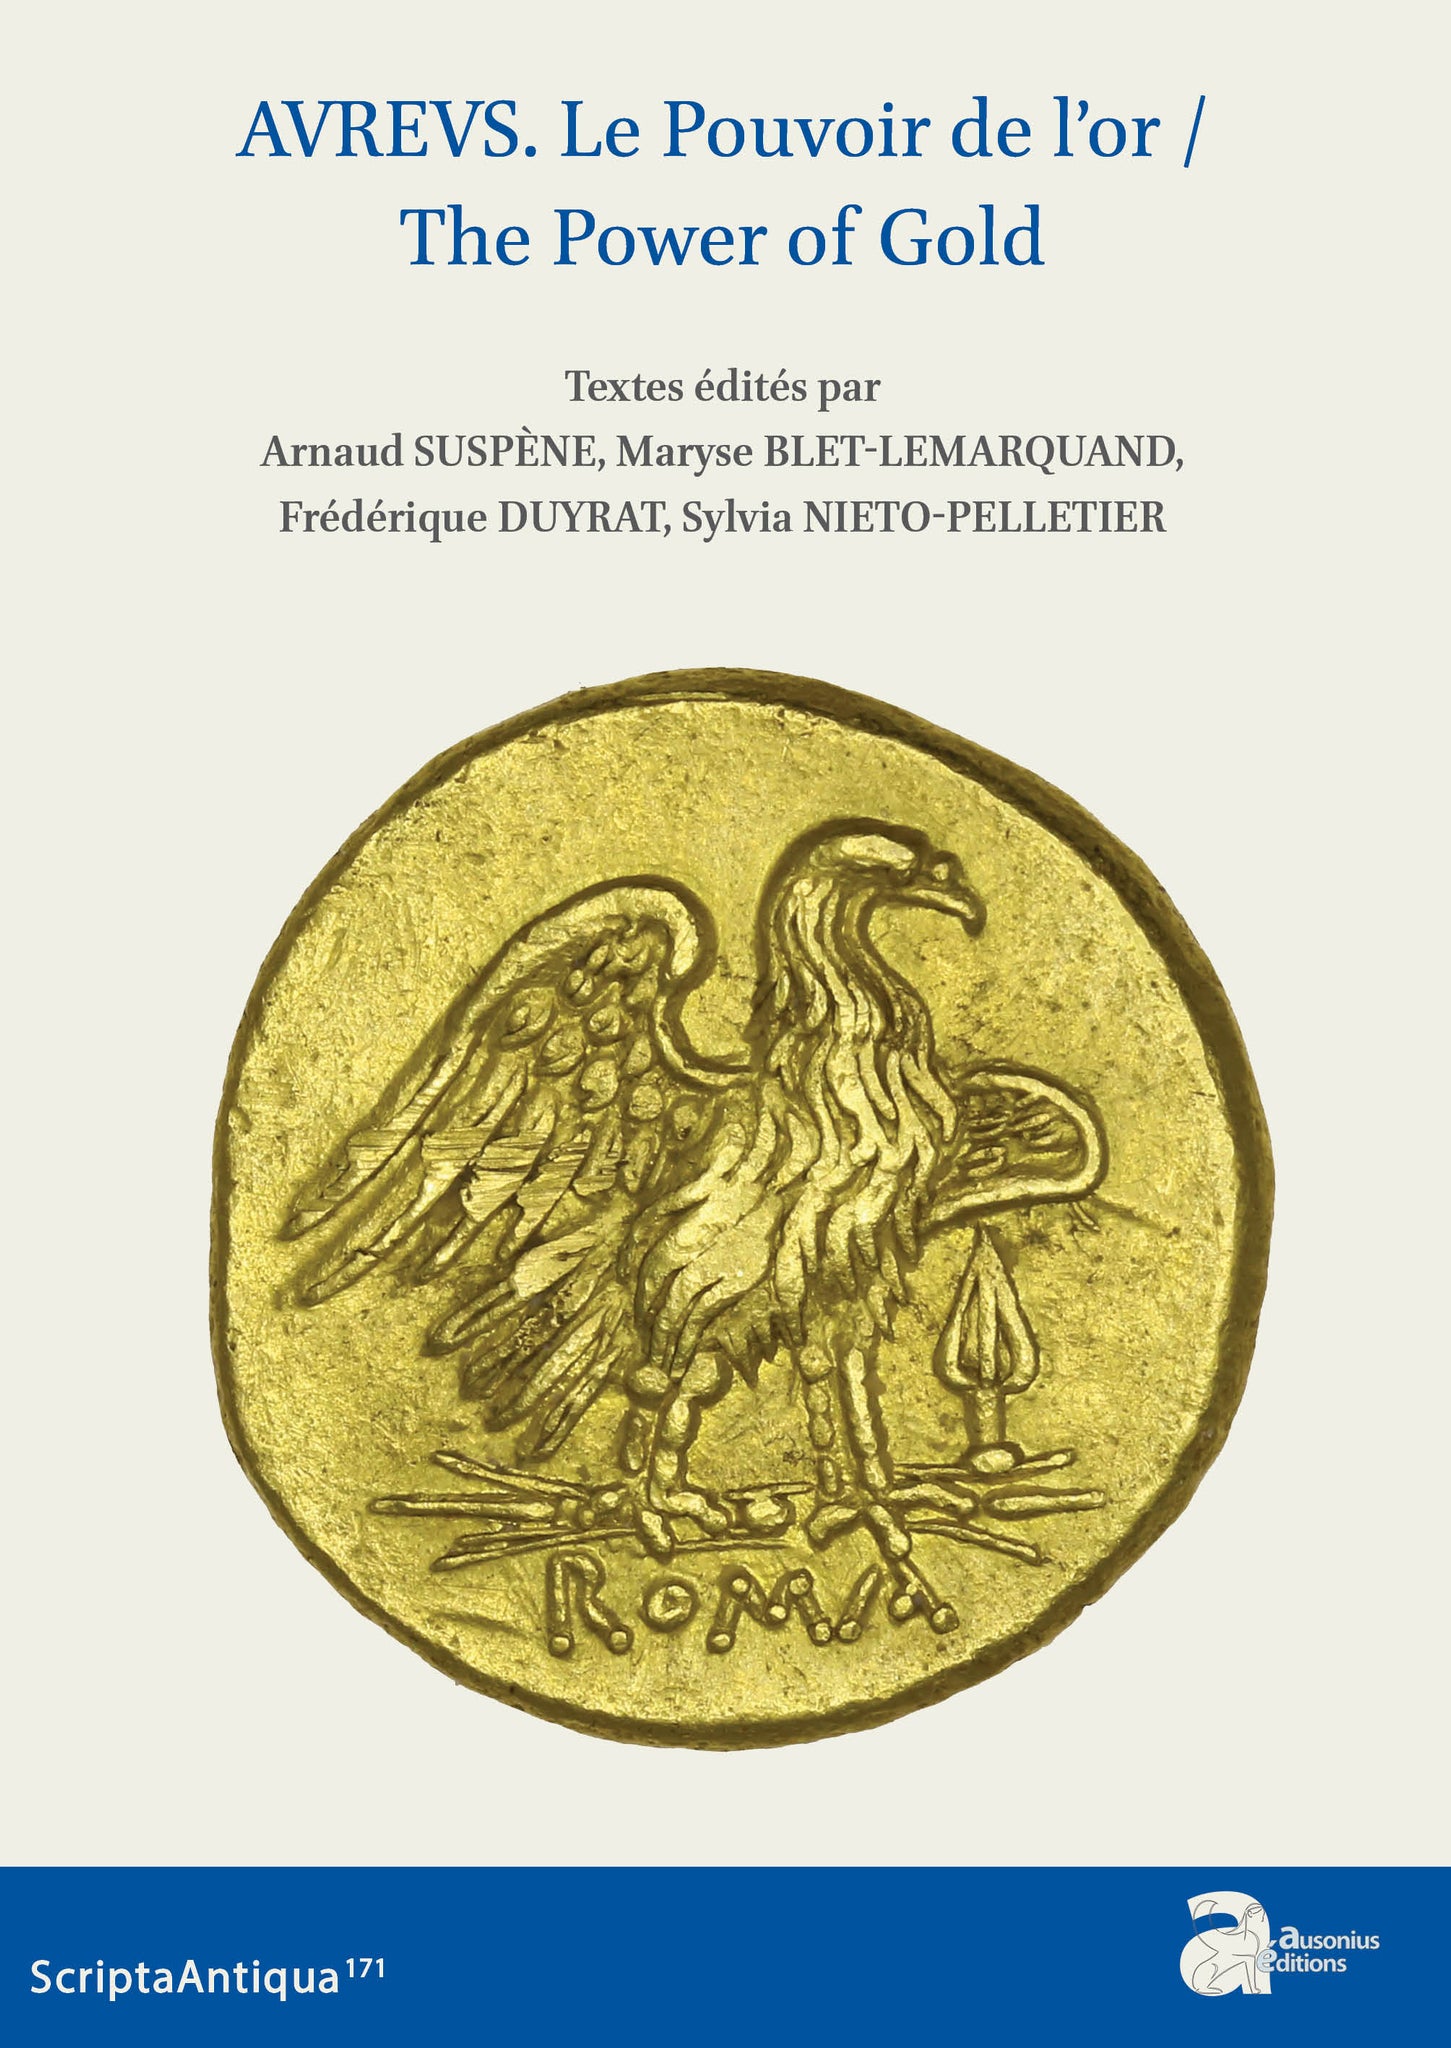 AVREVS. Le pouvoir de l'or/The Power of Gold. Scripta Antiqua 171.